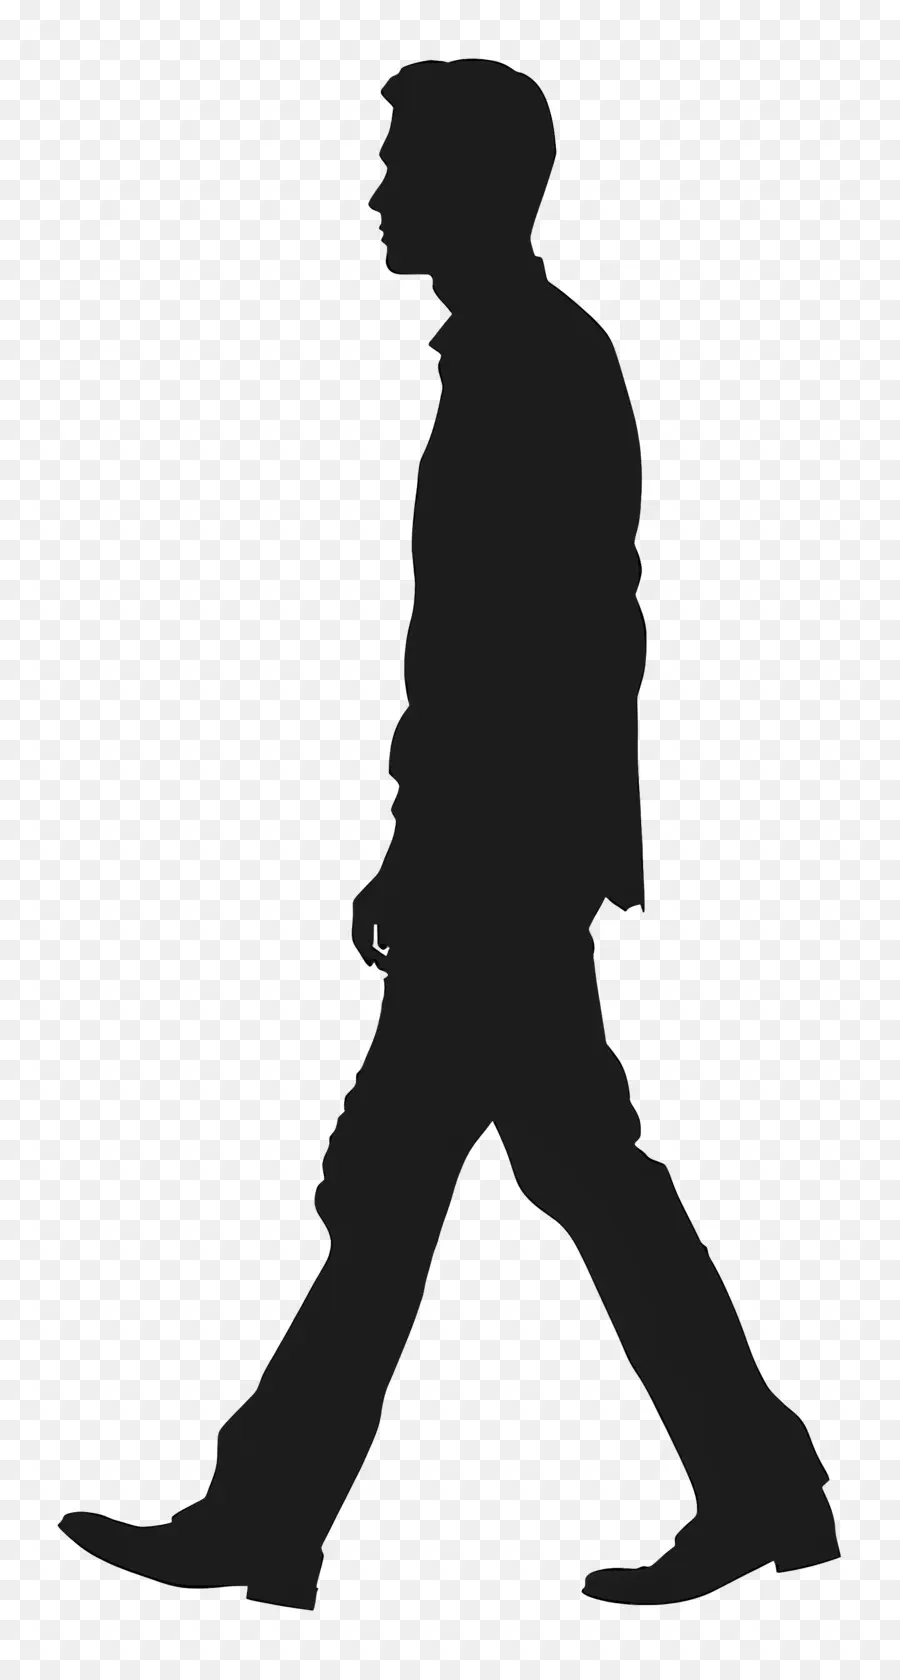 Walking Man Silhouette Silhouette Mann, das entschlossenes schwarzes Hemd spazieren geht - Silhouette des entschlossenen Mannes, der mit verschränkten Armen geht